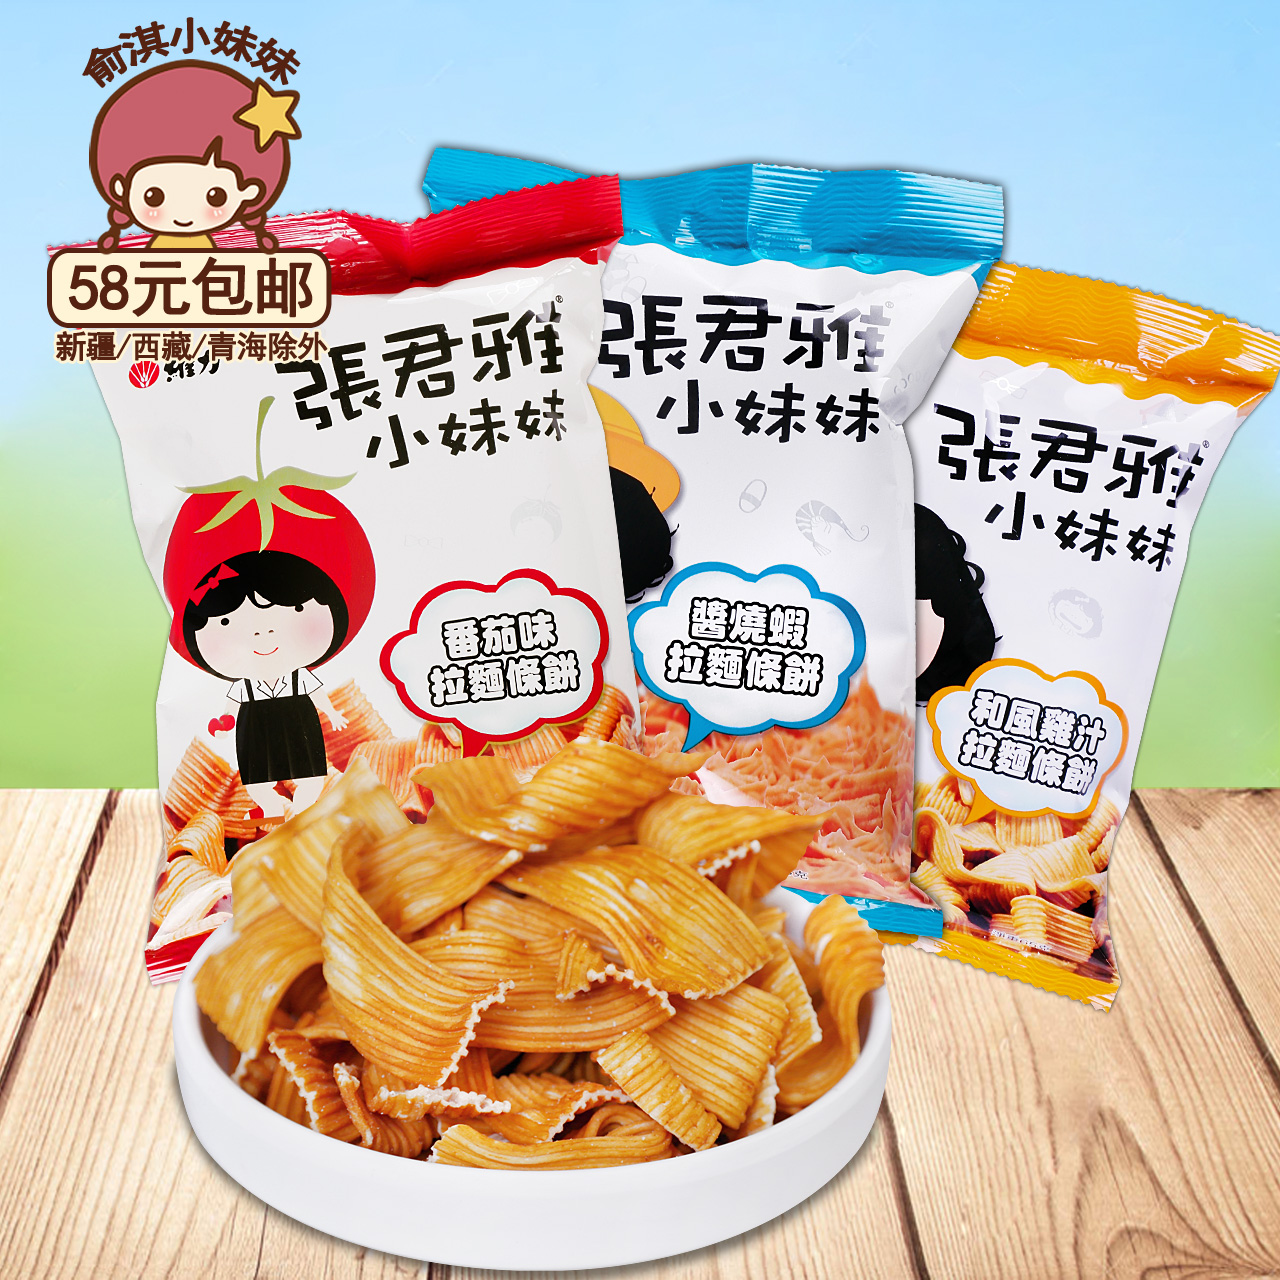 台湾进口食品张君雅小妹妹番茄味鸡肉味酱烧虾味拉面条饼65g/袋